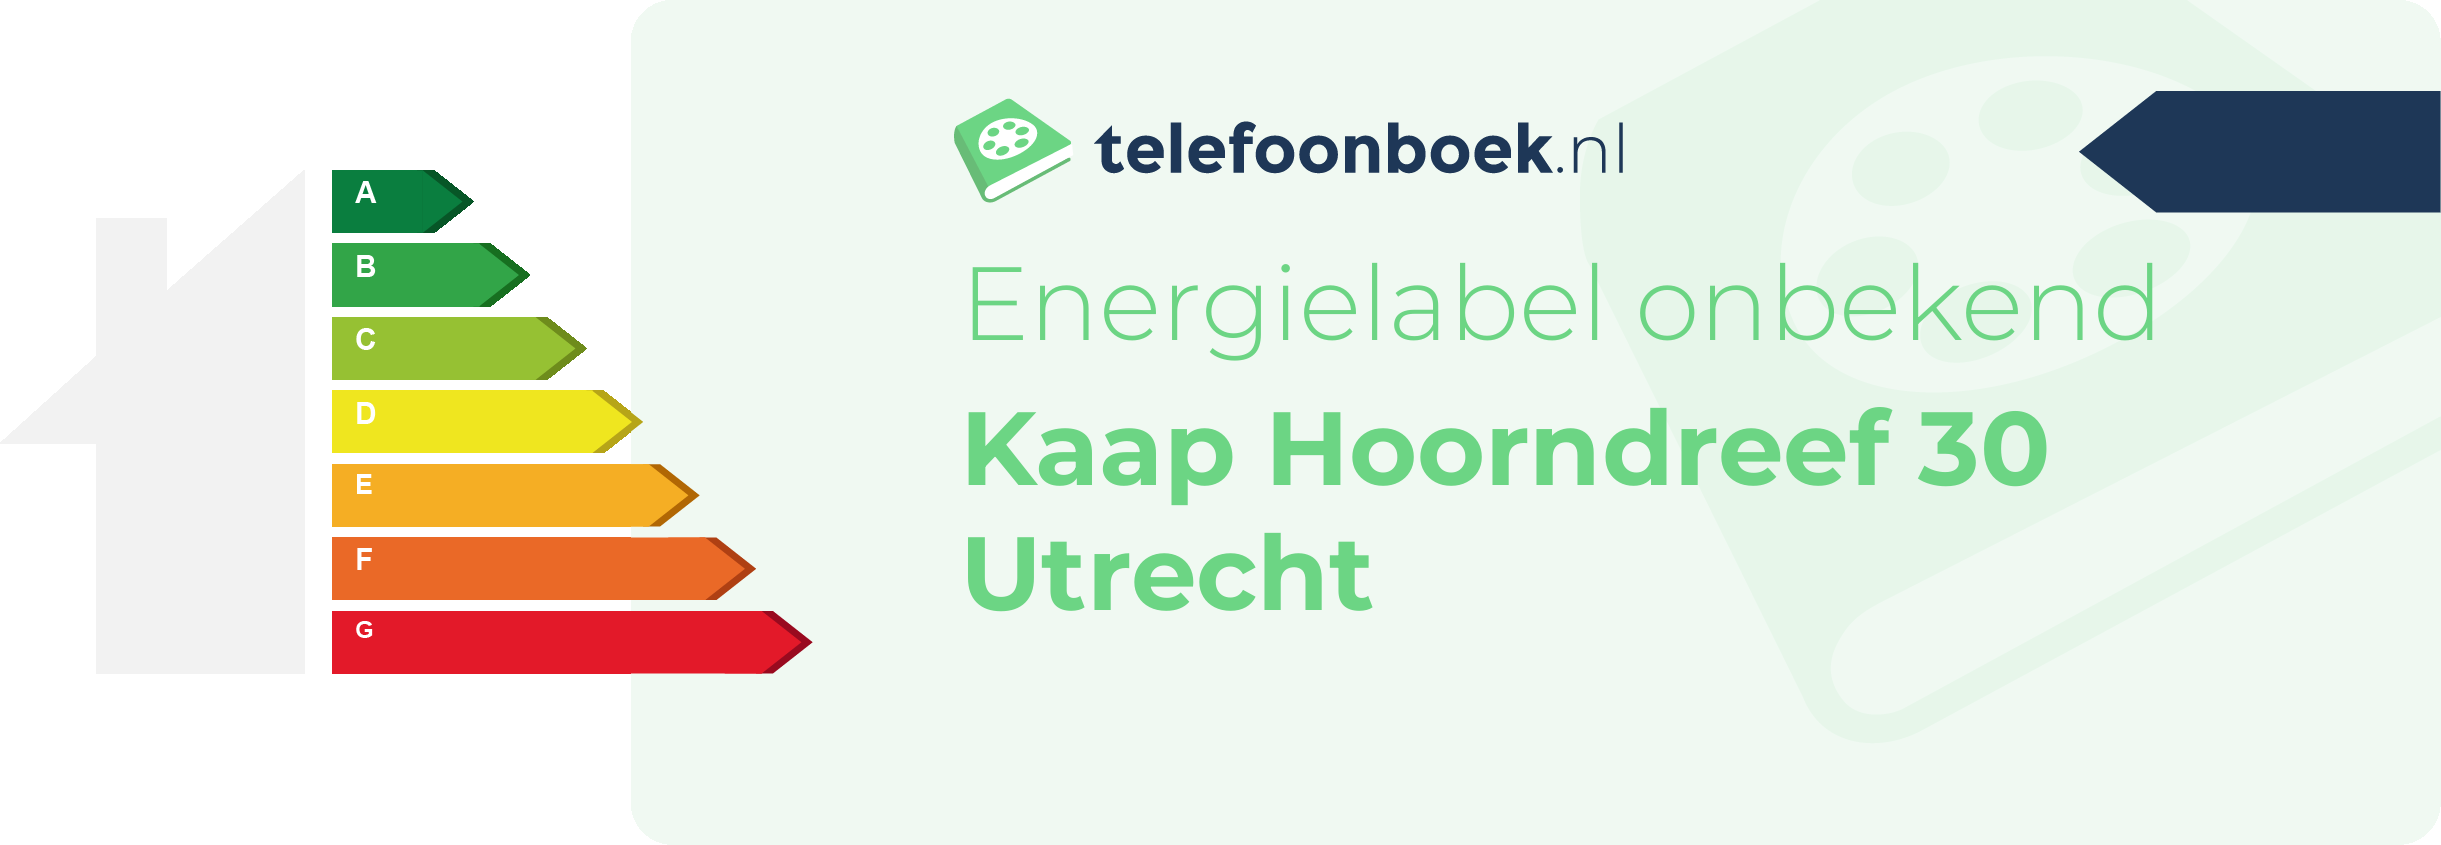 Energielabel Kaap Hoorndreef 30 Utrecht